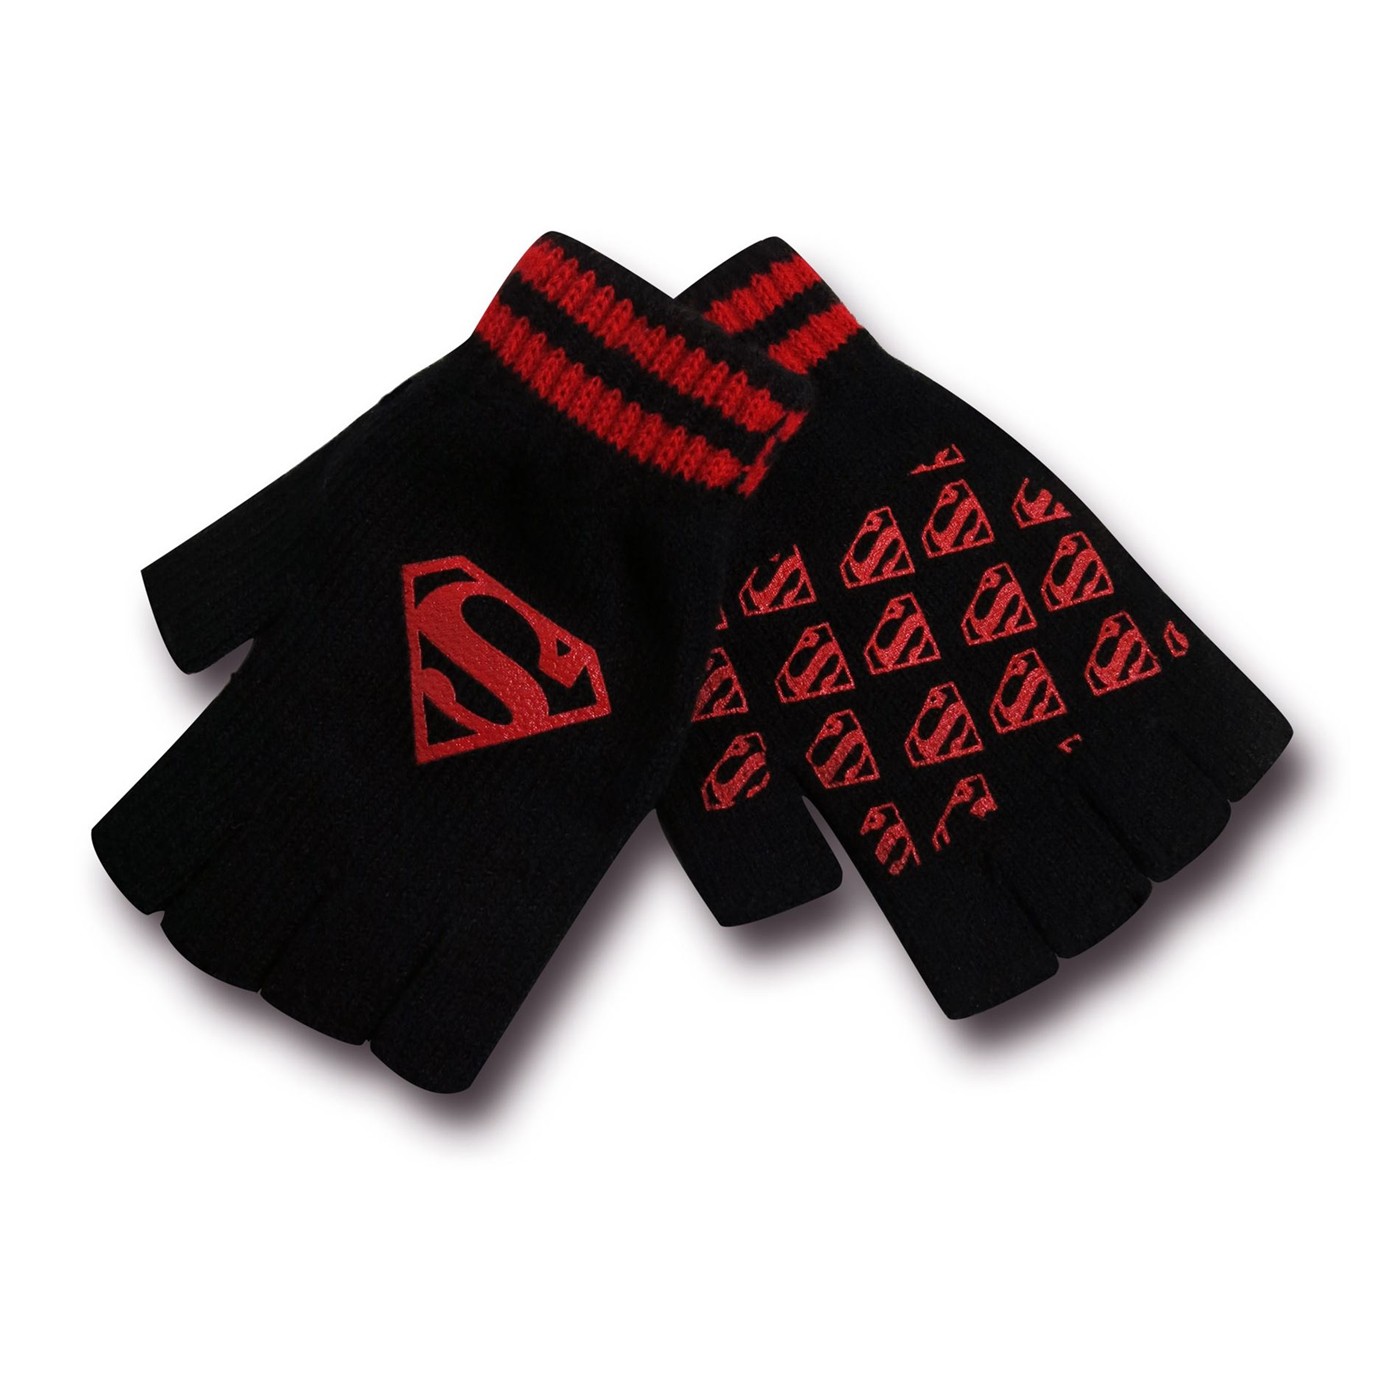 Superman Men's Black and Red Fingerless Gloves